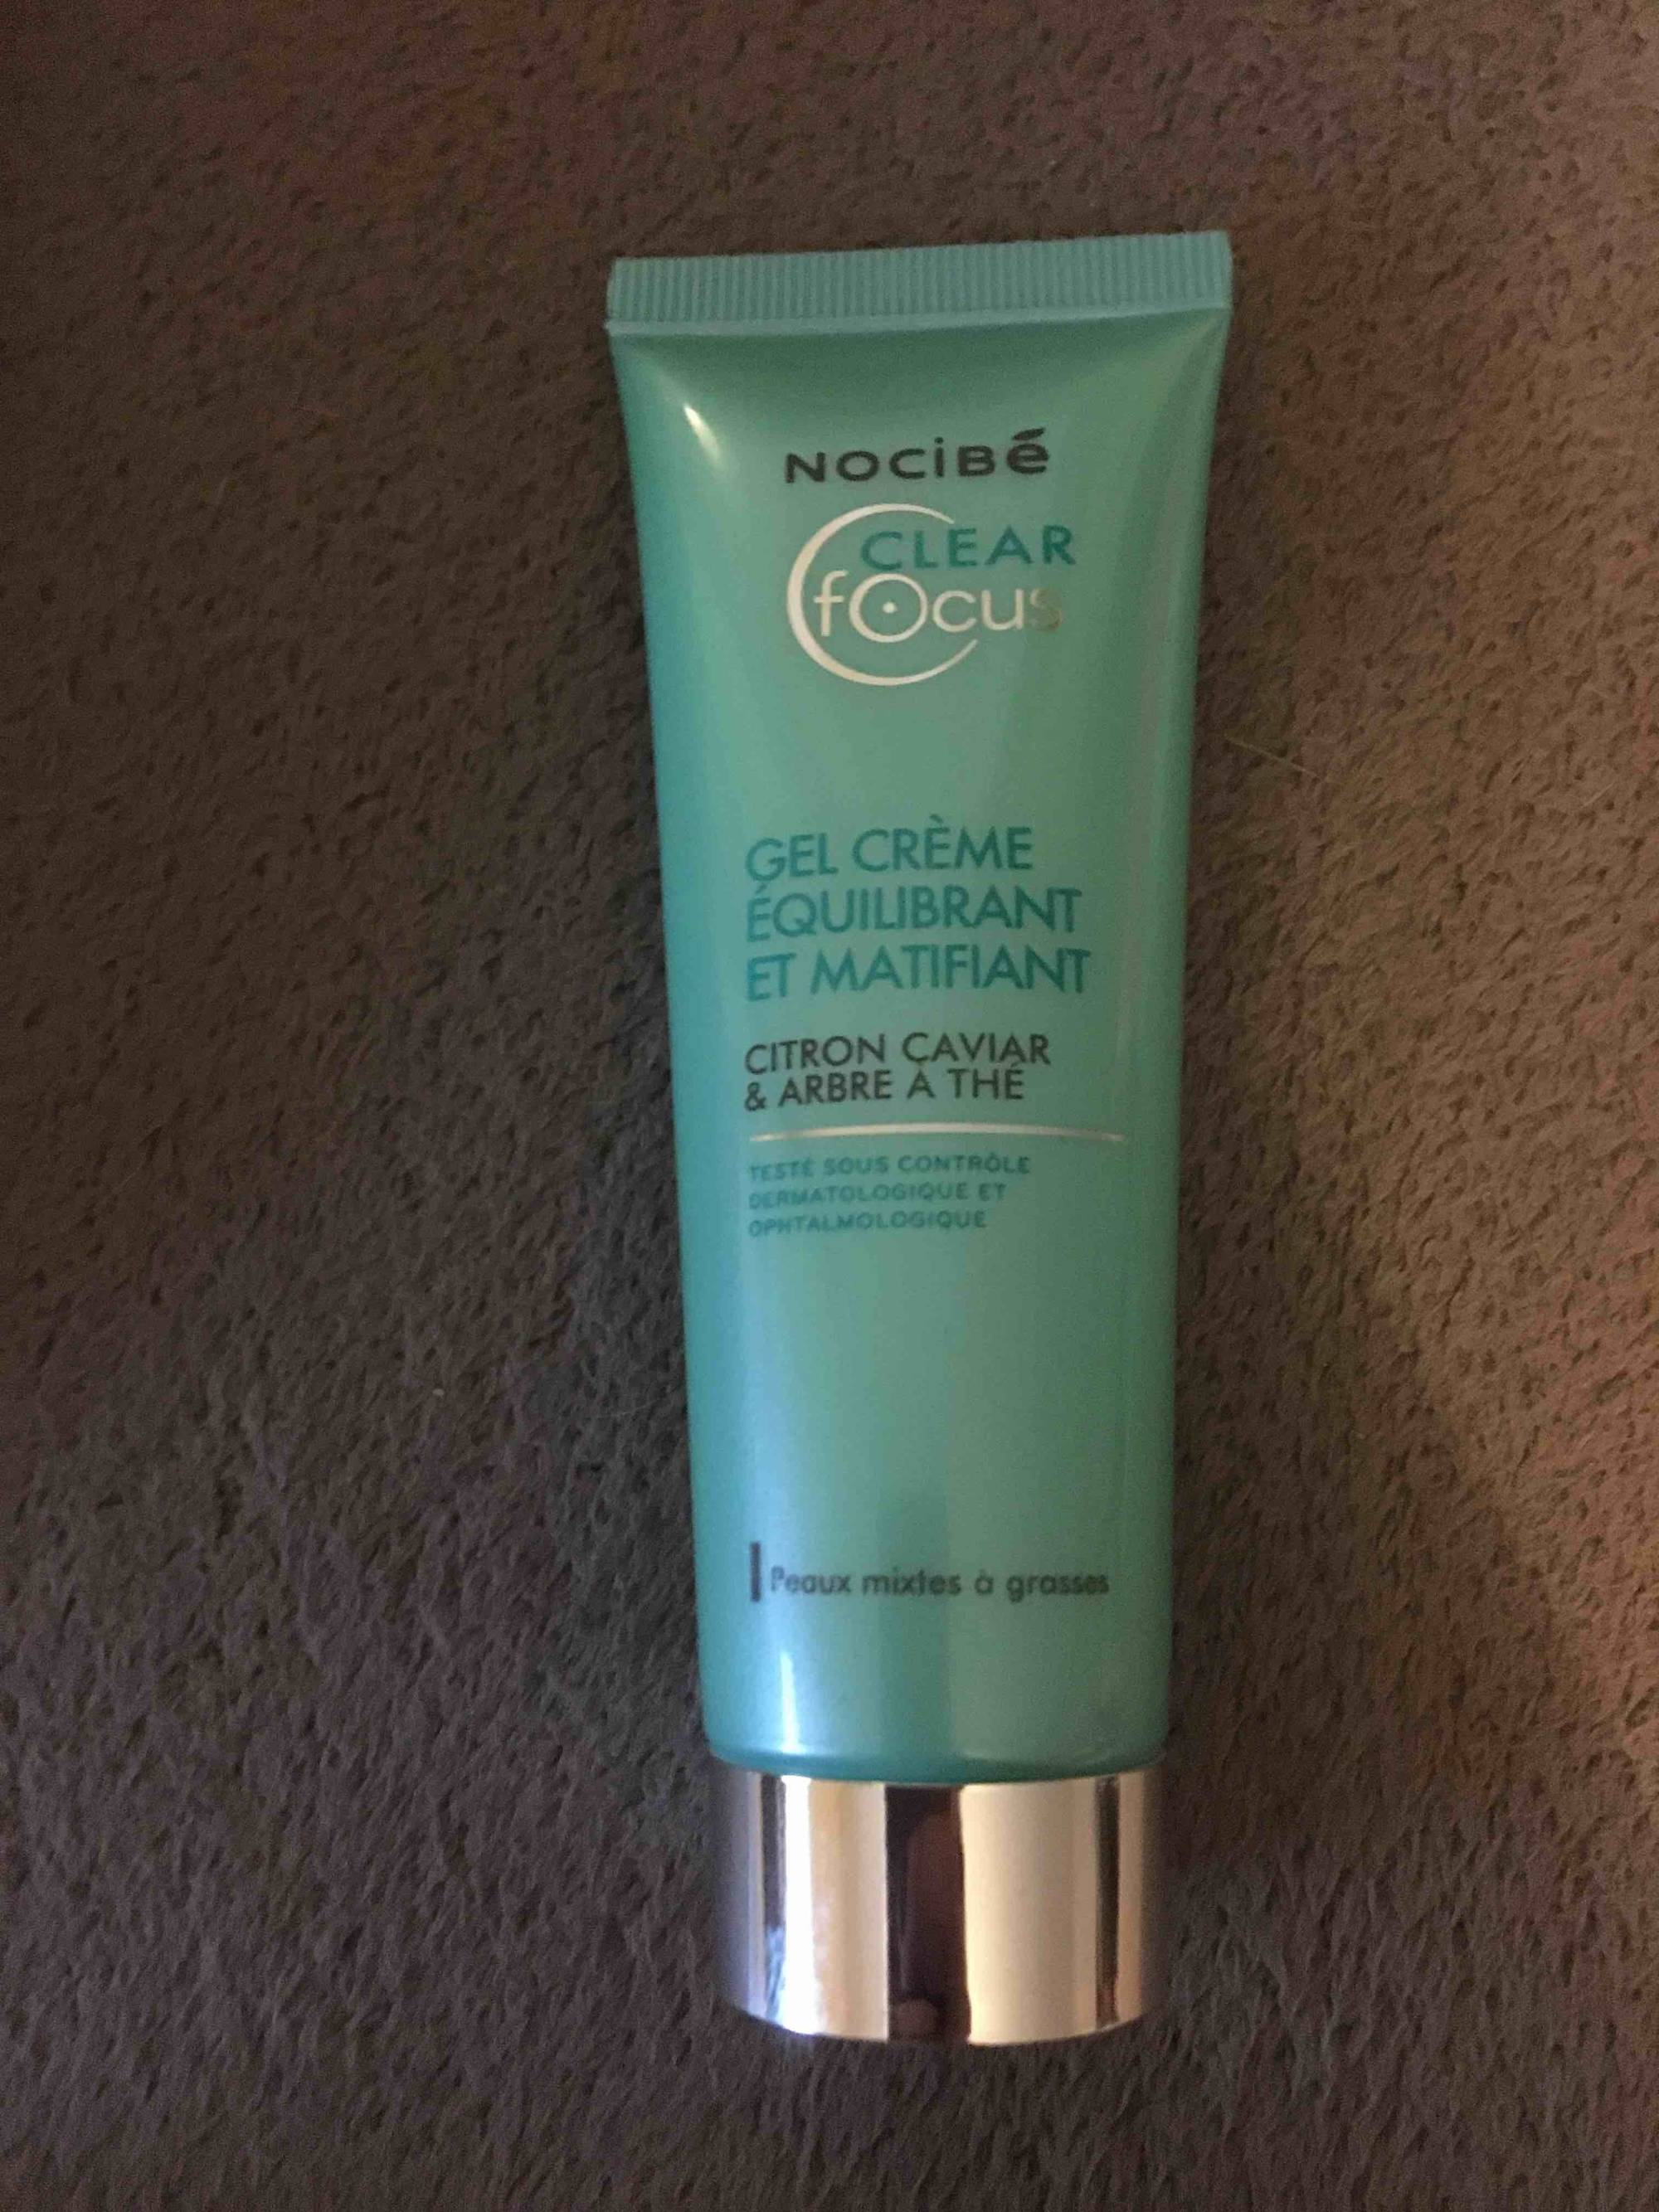 NOCIBÉ - Clear focus - Gel crème équilibrant et matifiant